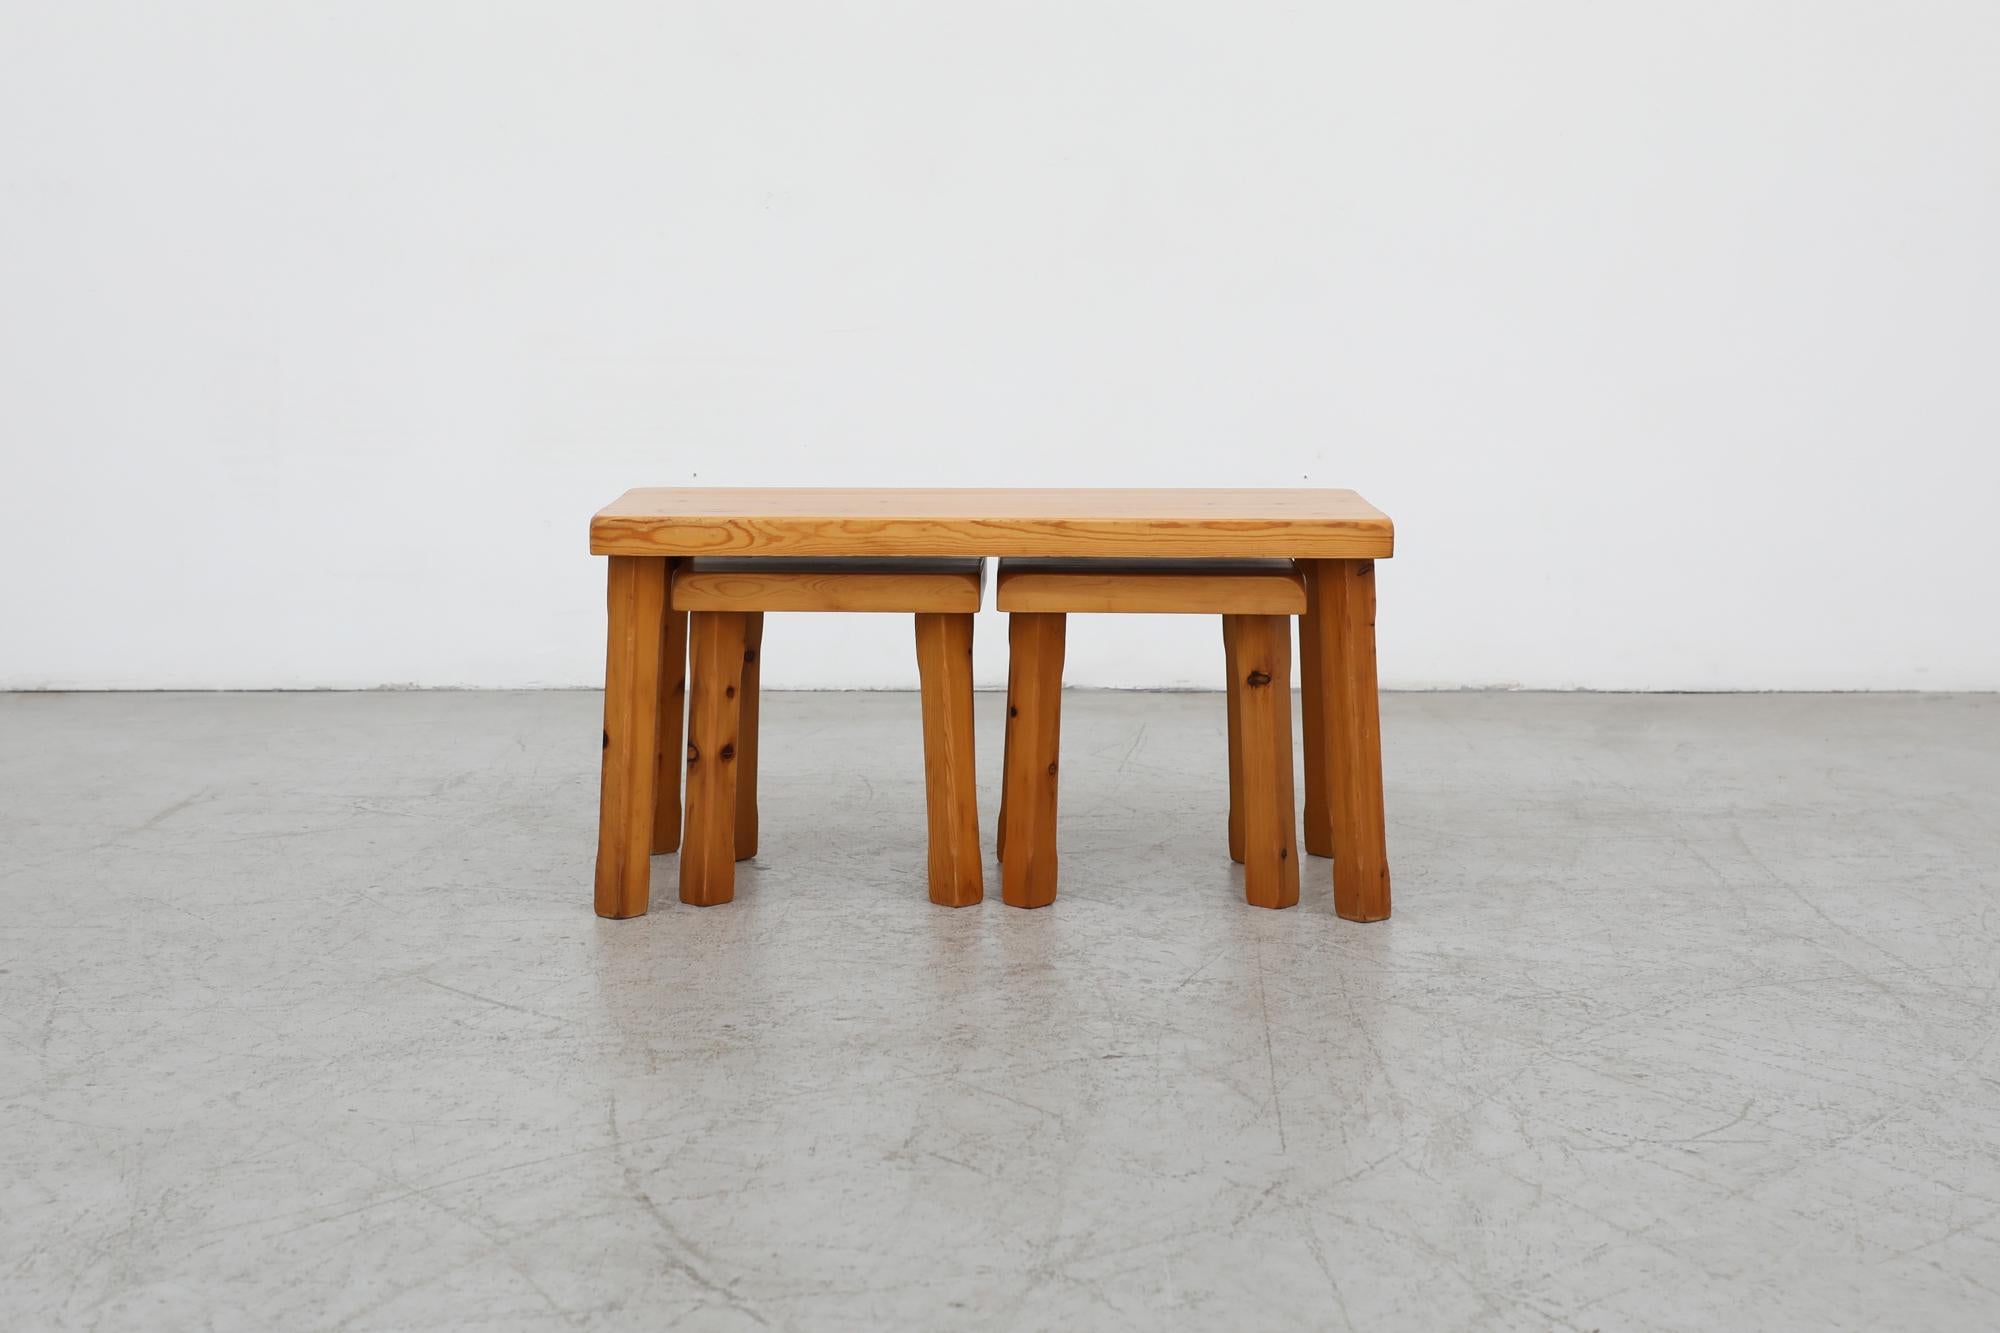 Magnifique ensemble de 3 tables gigognes en pin de style brutaliste de Charlotte Perriand avec des pieds carrés sculptés à la main. Une grande table principale et deux petites tables carrées assorties (11,75 x 11,75 x 10,75) en dessous. En bon état